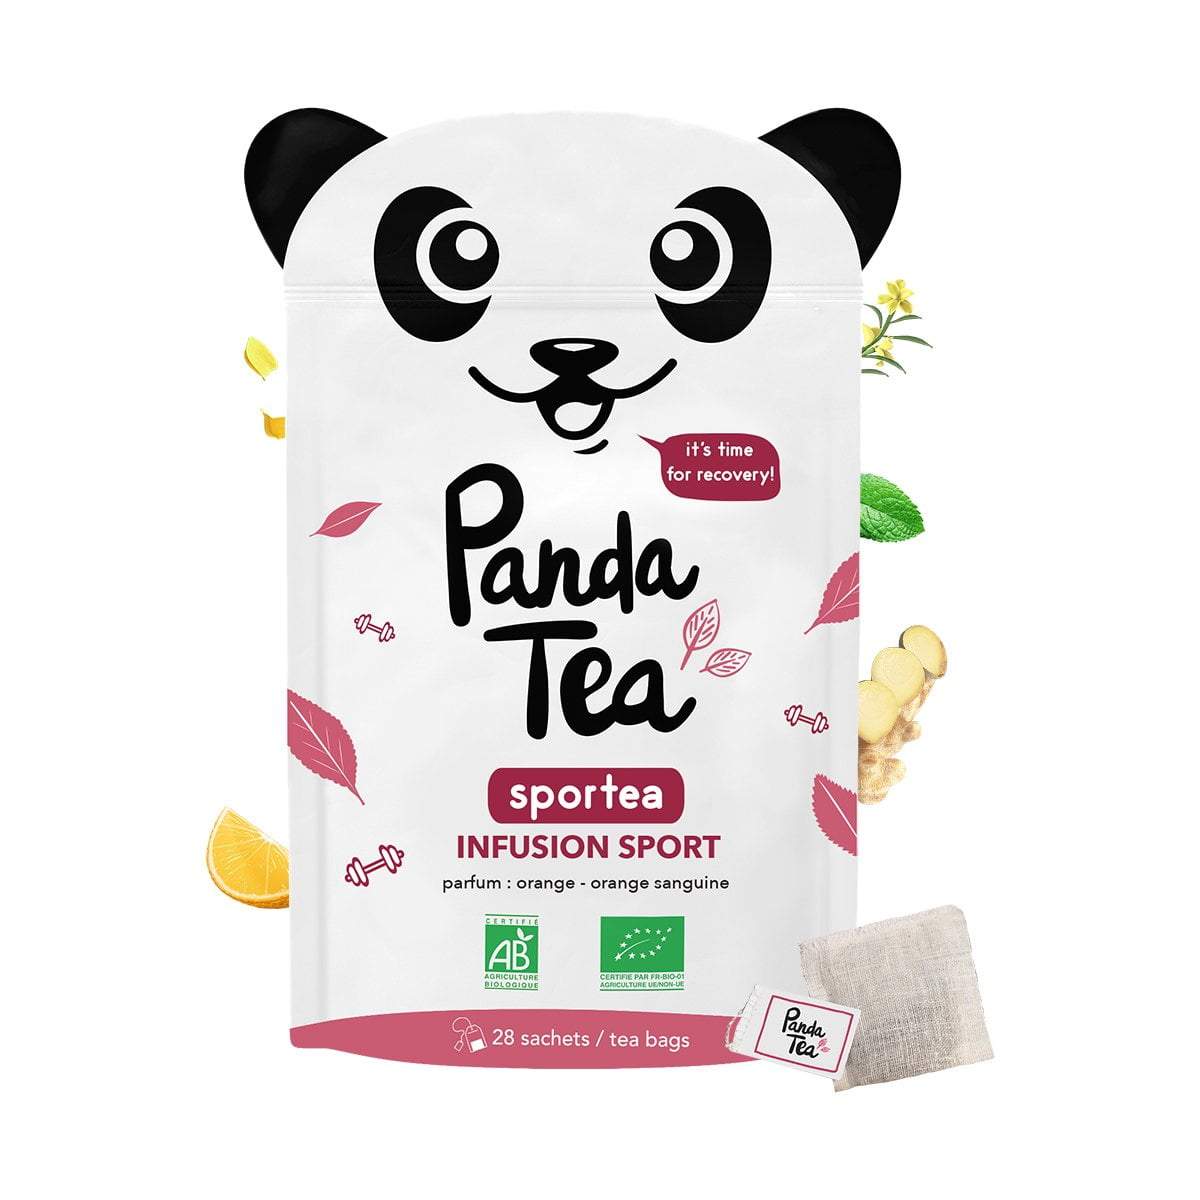 Panda Tea Morning Boost 28 Sachets